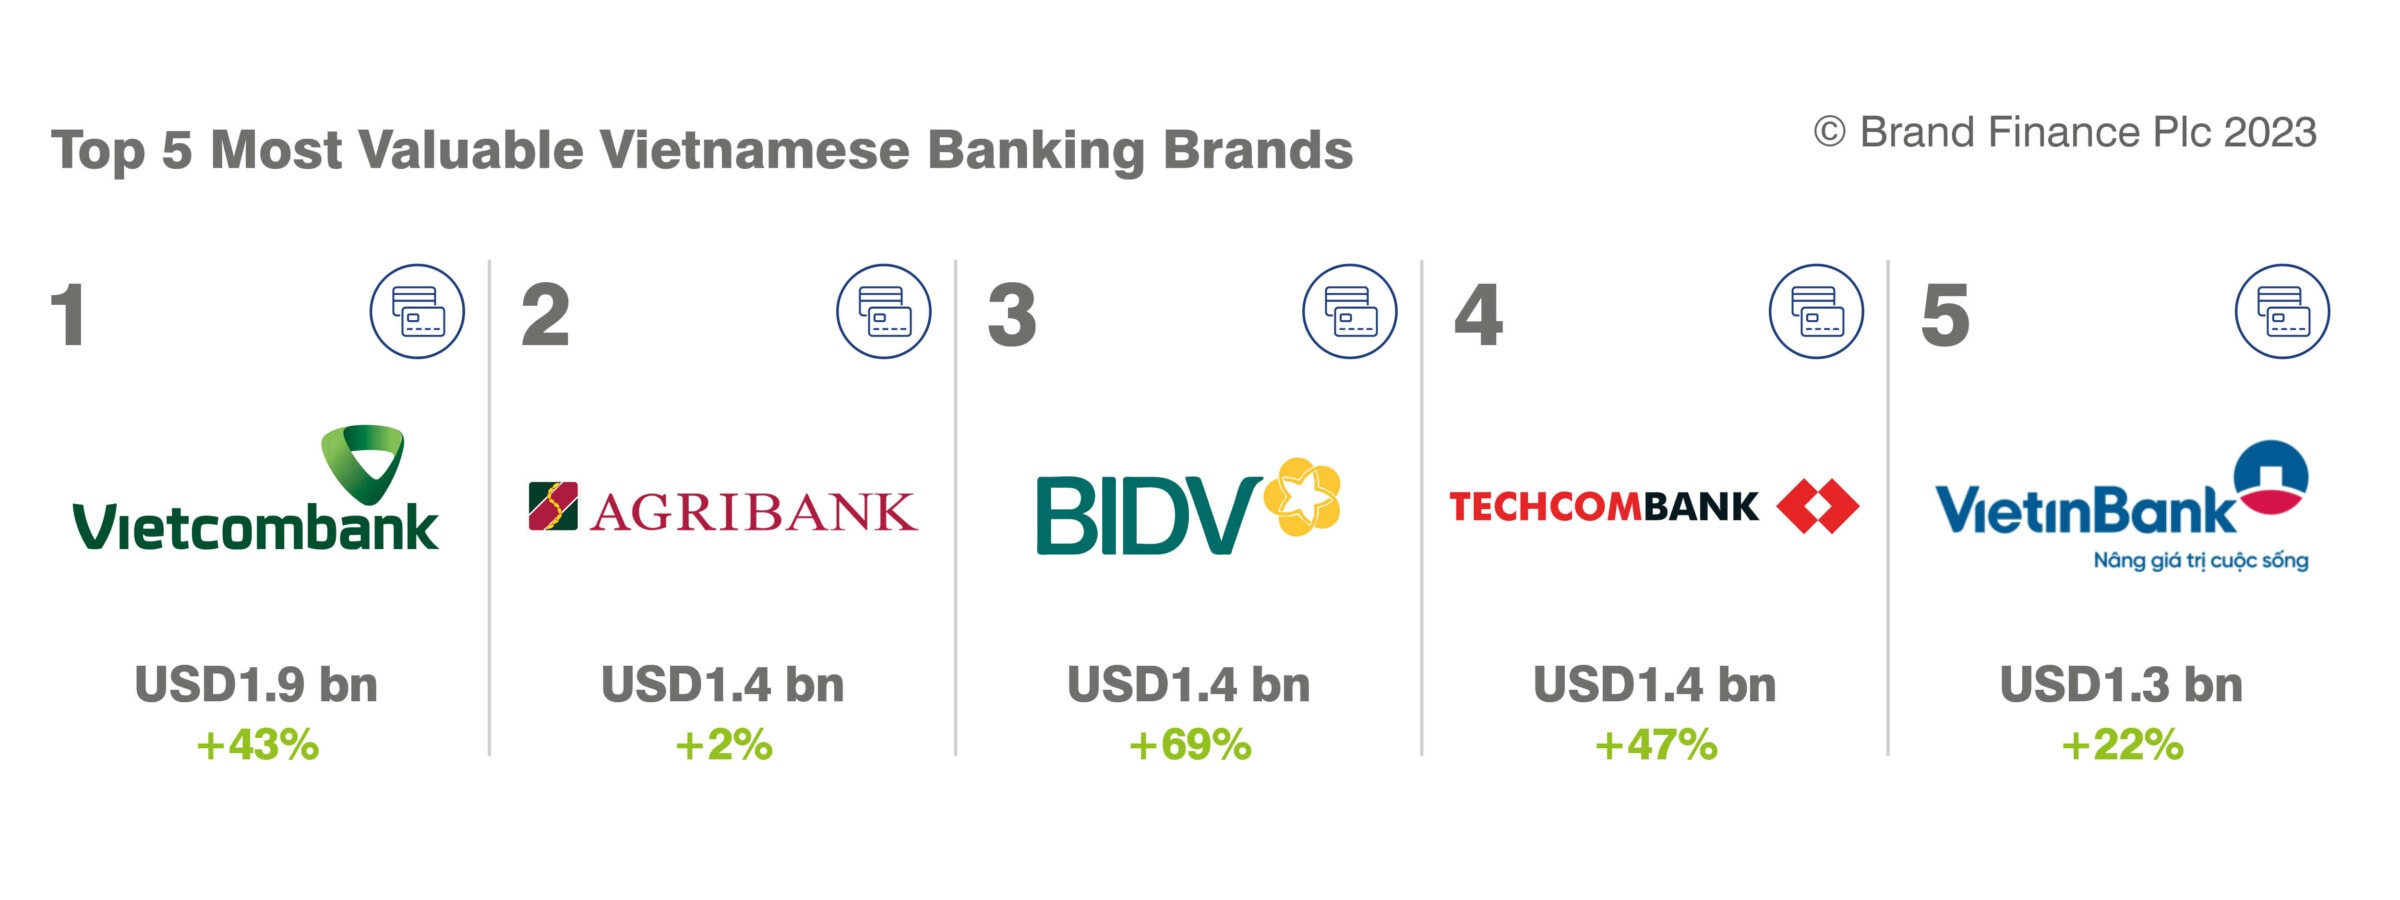 Top 5 Banking Brands in Vietnam 2023